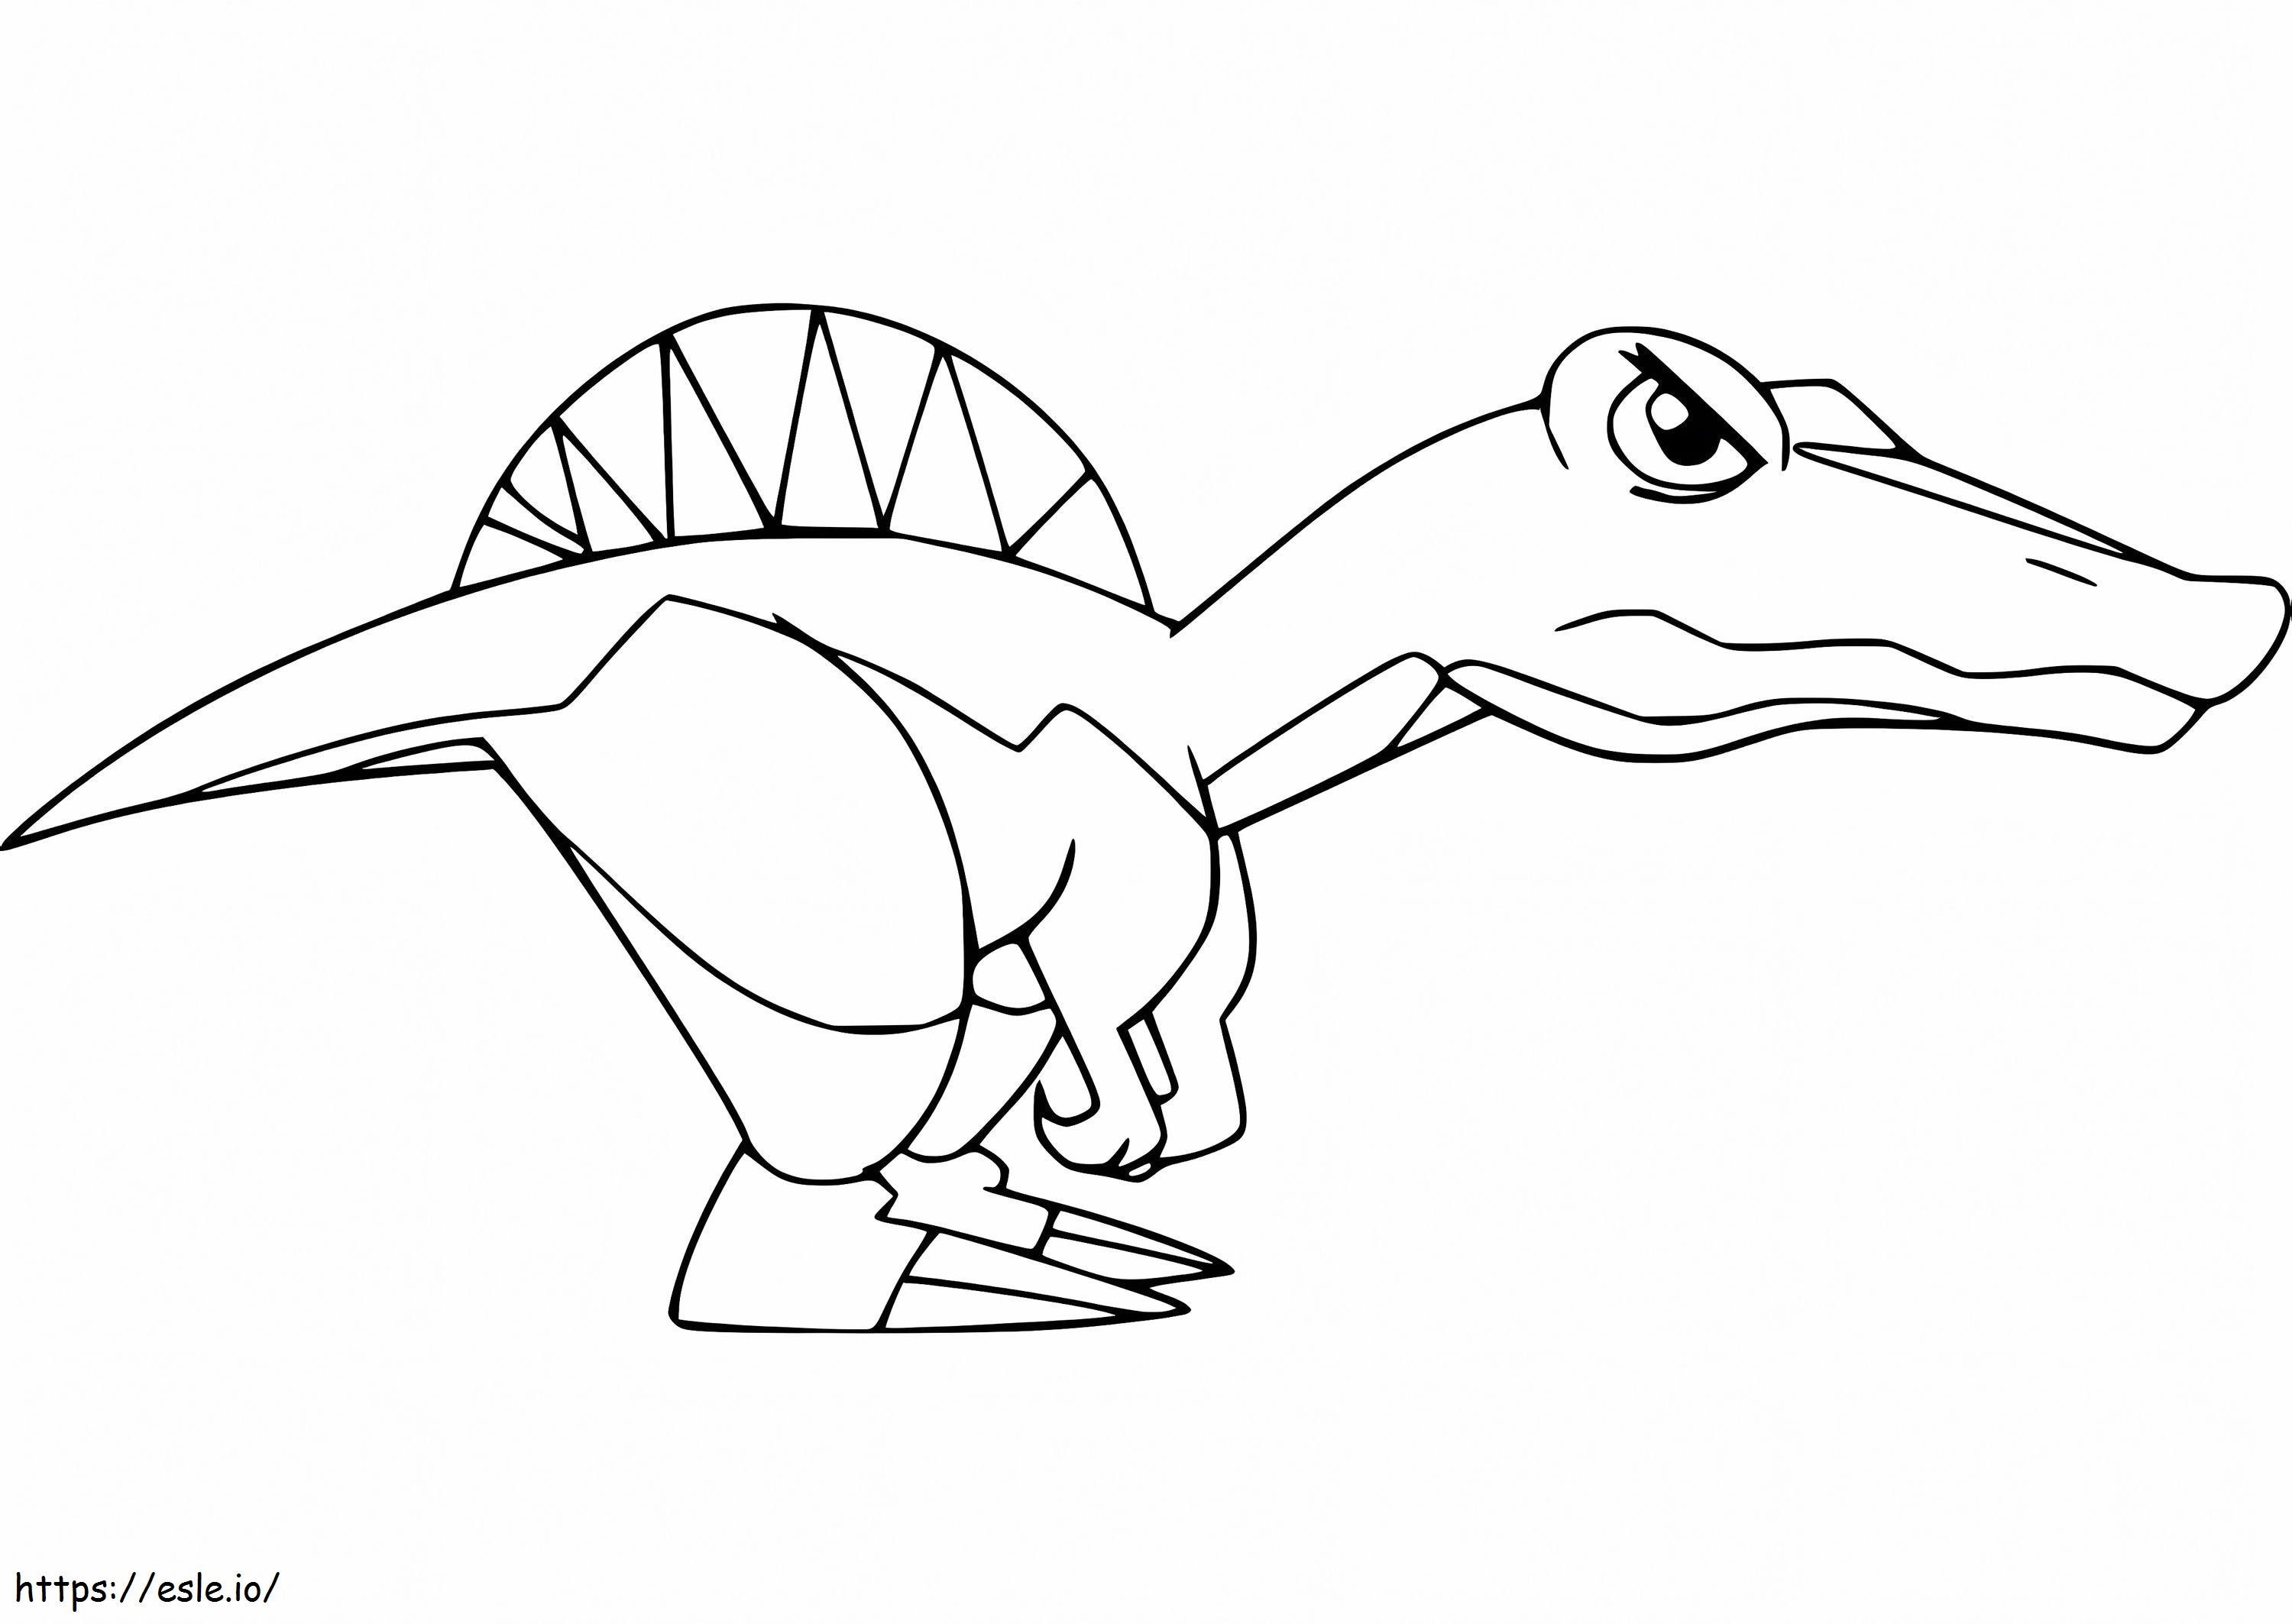 Cartoon Angry Spinosaurus coloring page